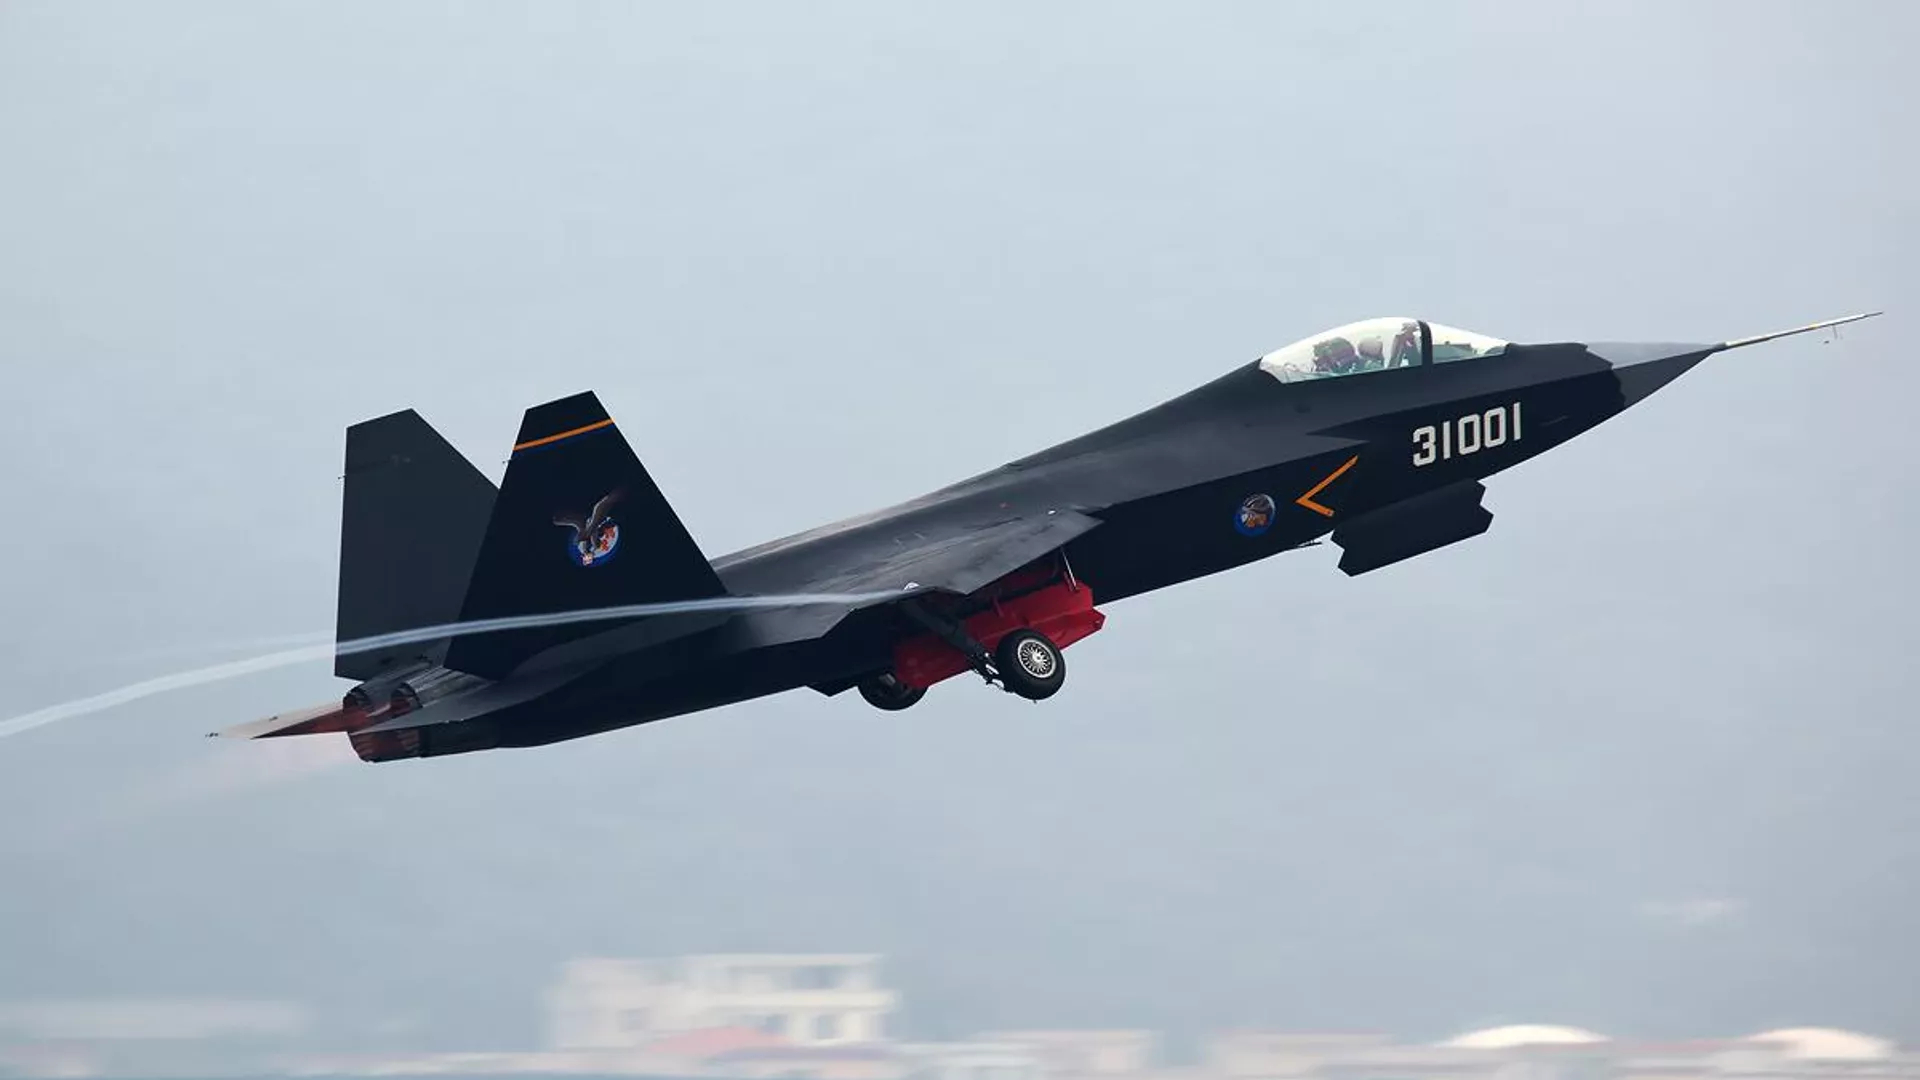 china - Notas sueltas:¿El FA-50 de Filipinas derribó al F-22 Raptor estadounidense en Cope Thunder? - Página 5 1147193729_0:63:1200:738_1920x0_80_0_0_329c3c620a0d4960c41c321a6cbfafb4.jpg